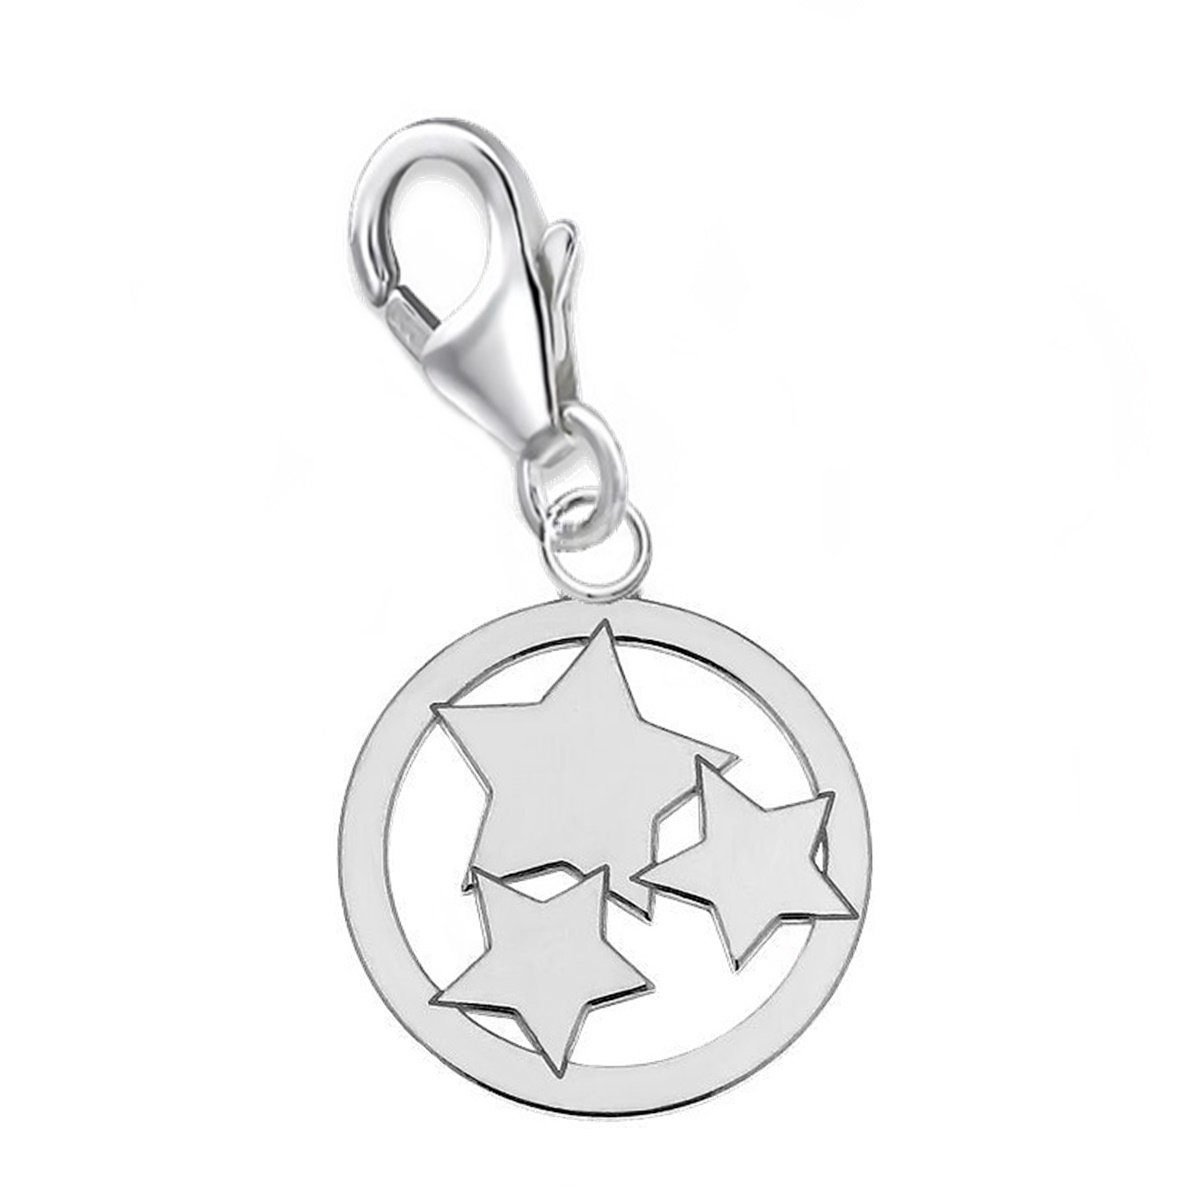 Goldene Hufeisen Charm Silber Charm für Anhänger Halskette Stern Bettelarmband oder Stern 925 Etui), Gliederarmband (inkl. für Karabiner